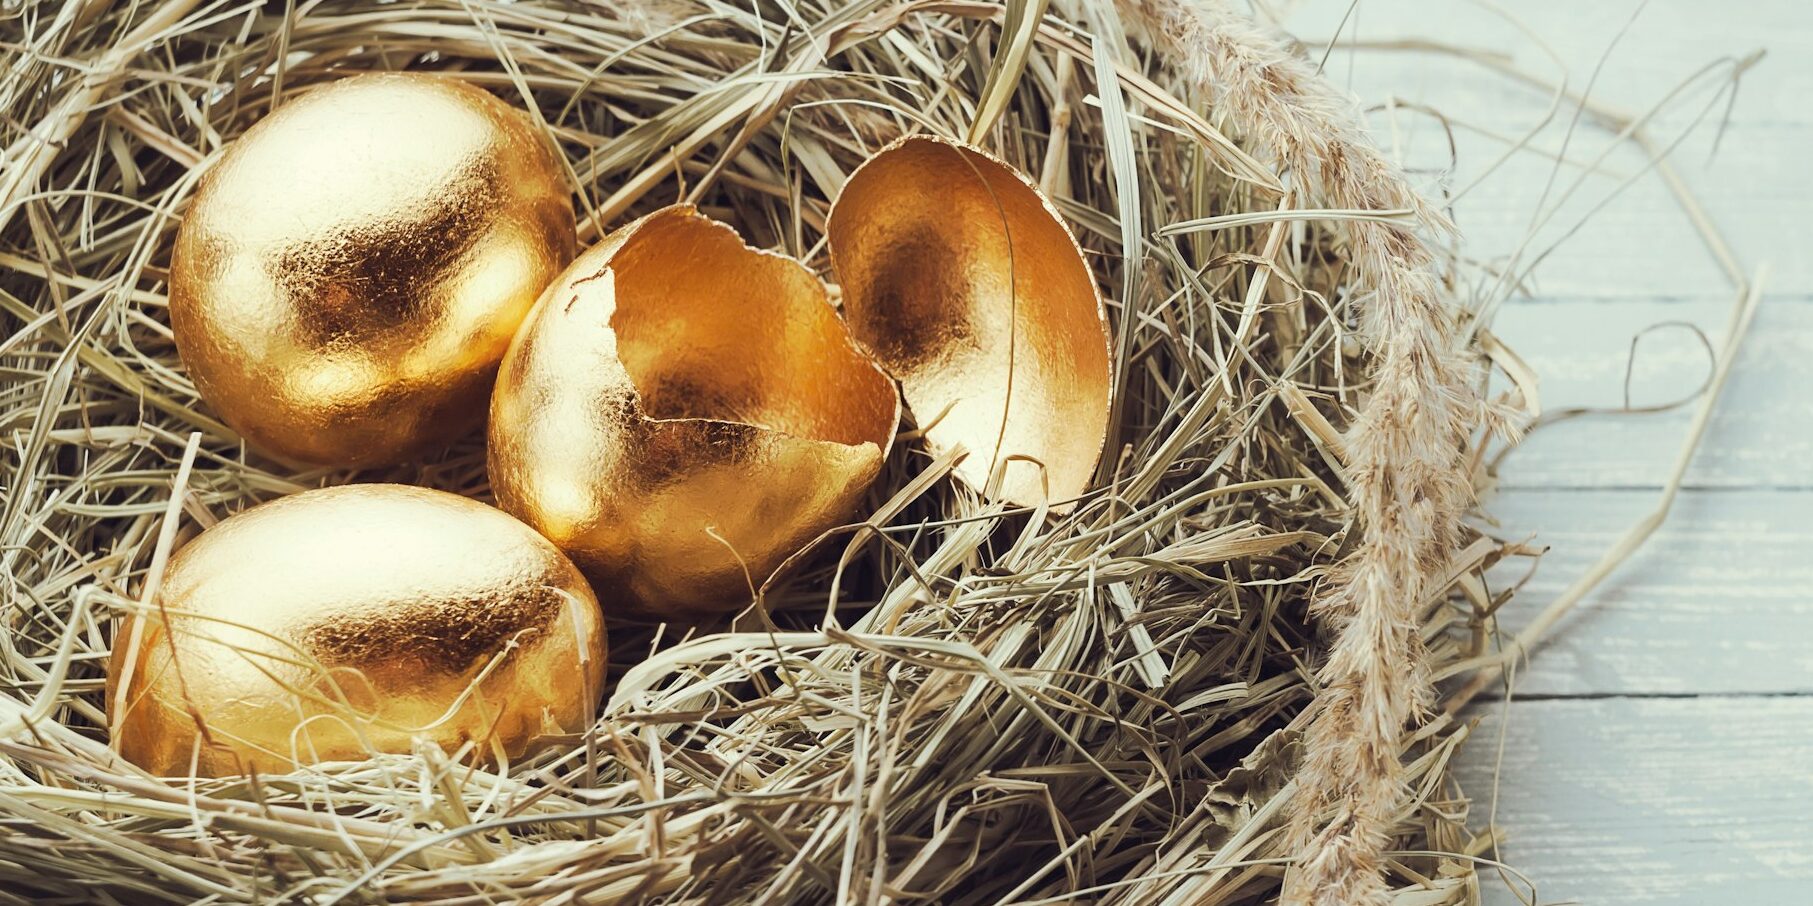 Golden eggs in the nest, one broken egg